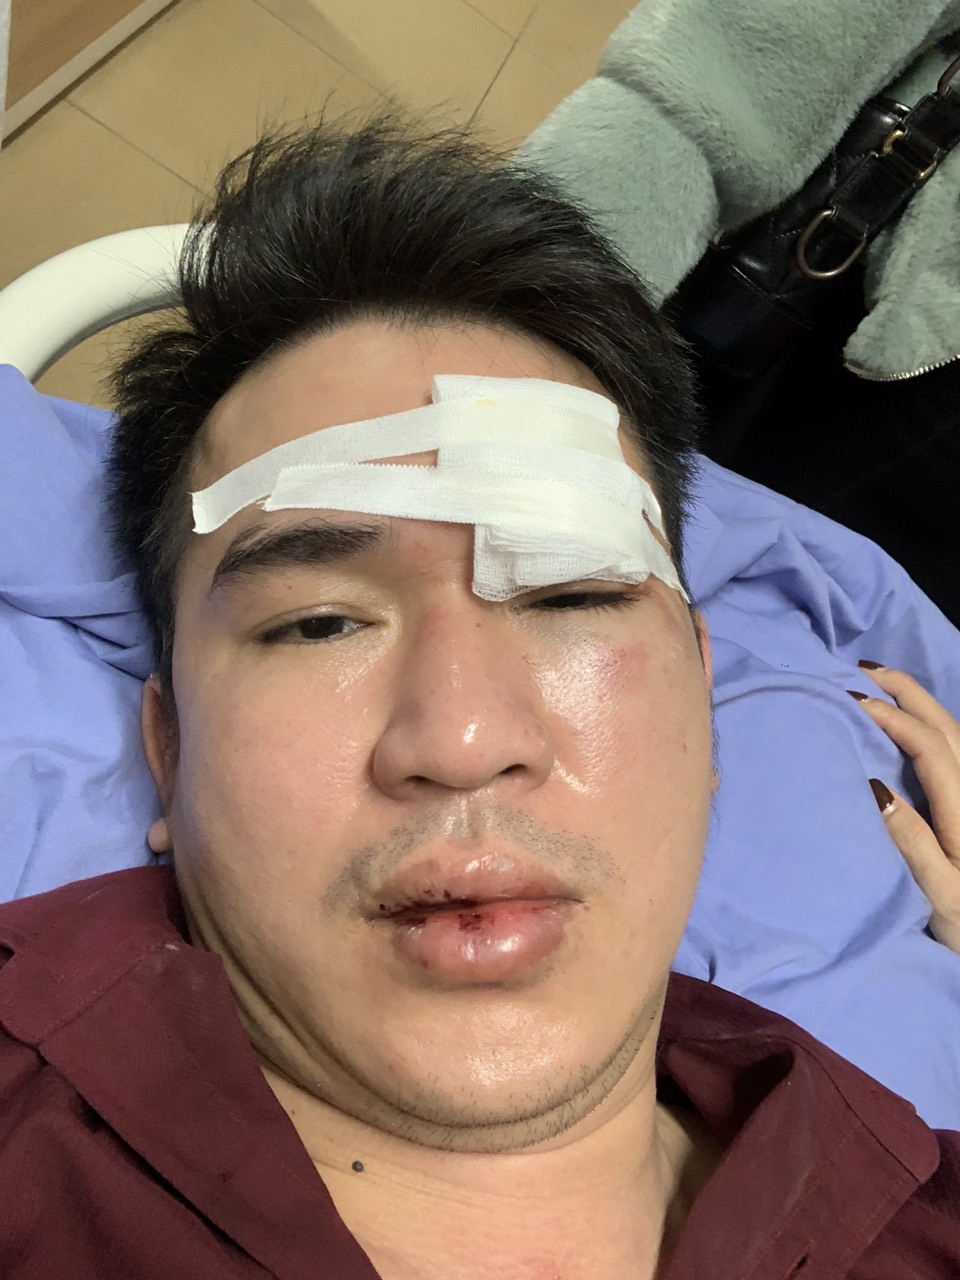 Anh Tuyến hiện đang được điều trị tại Bệnh viện Việt Đức.